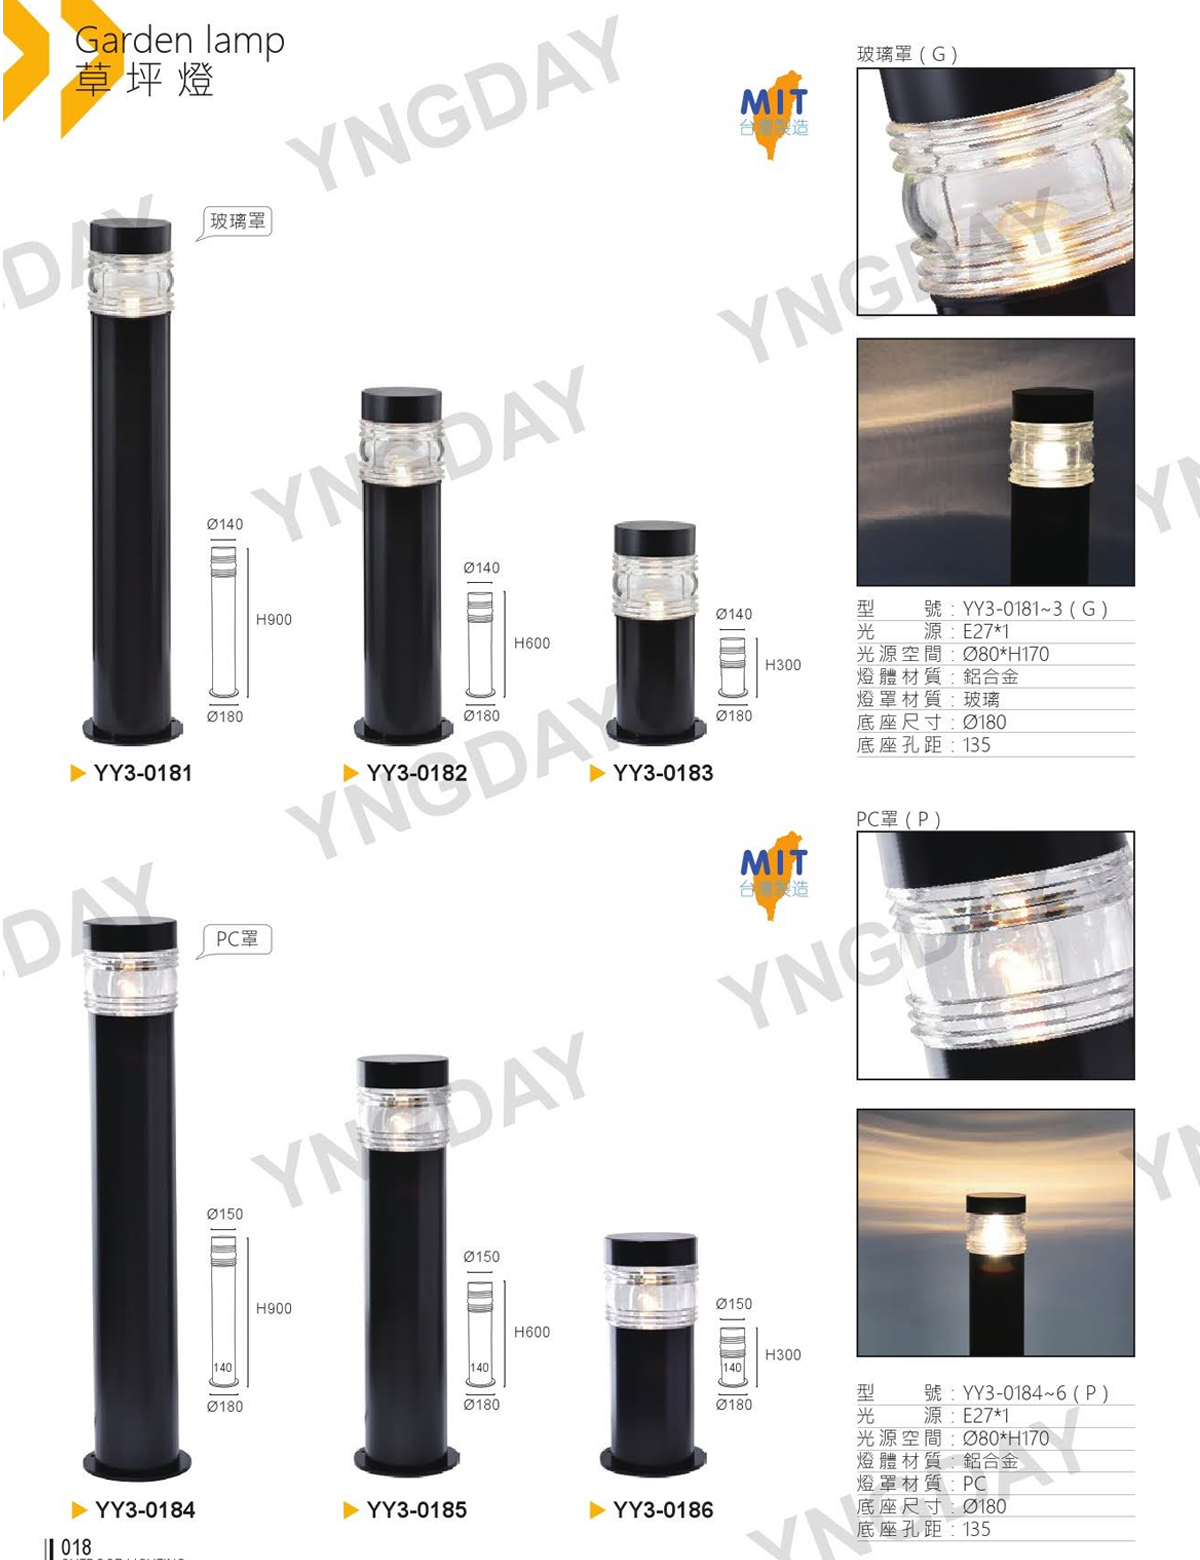 【YY】戶外燈 台灣製 草皮燈/草坪燈 PC罩 需搭配E27燈泡(另計)